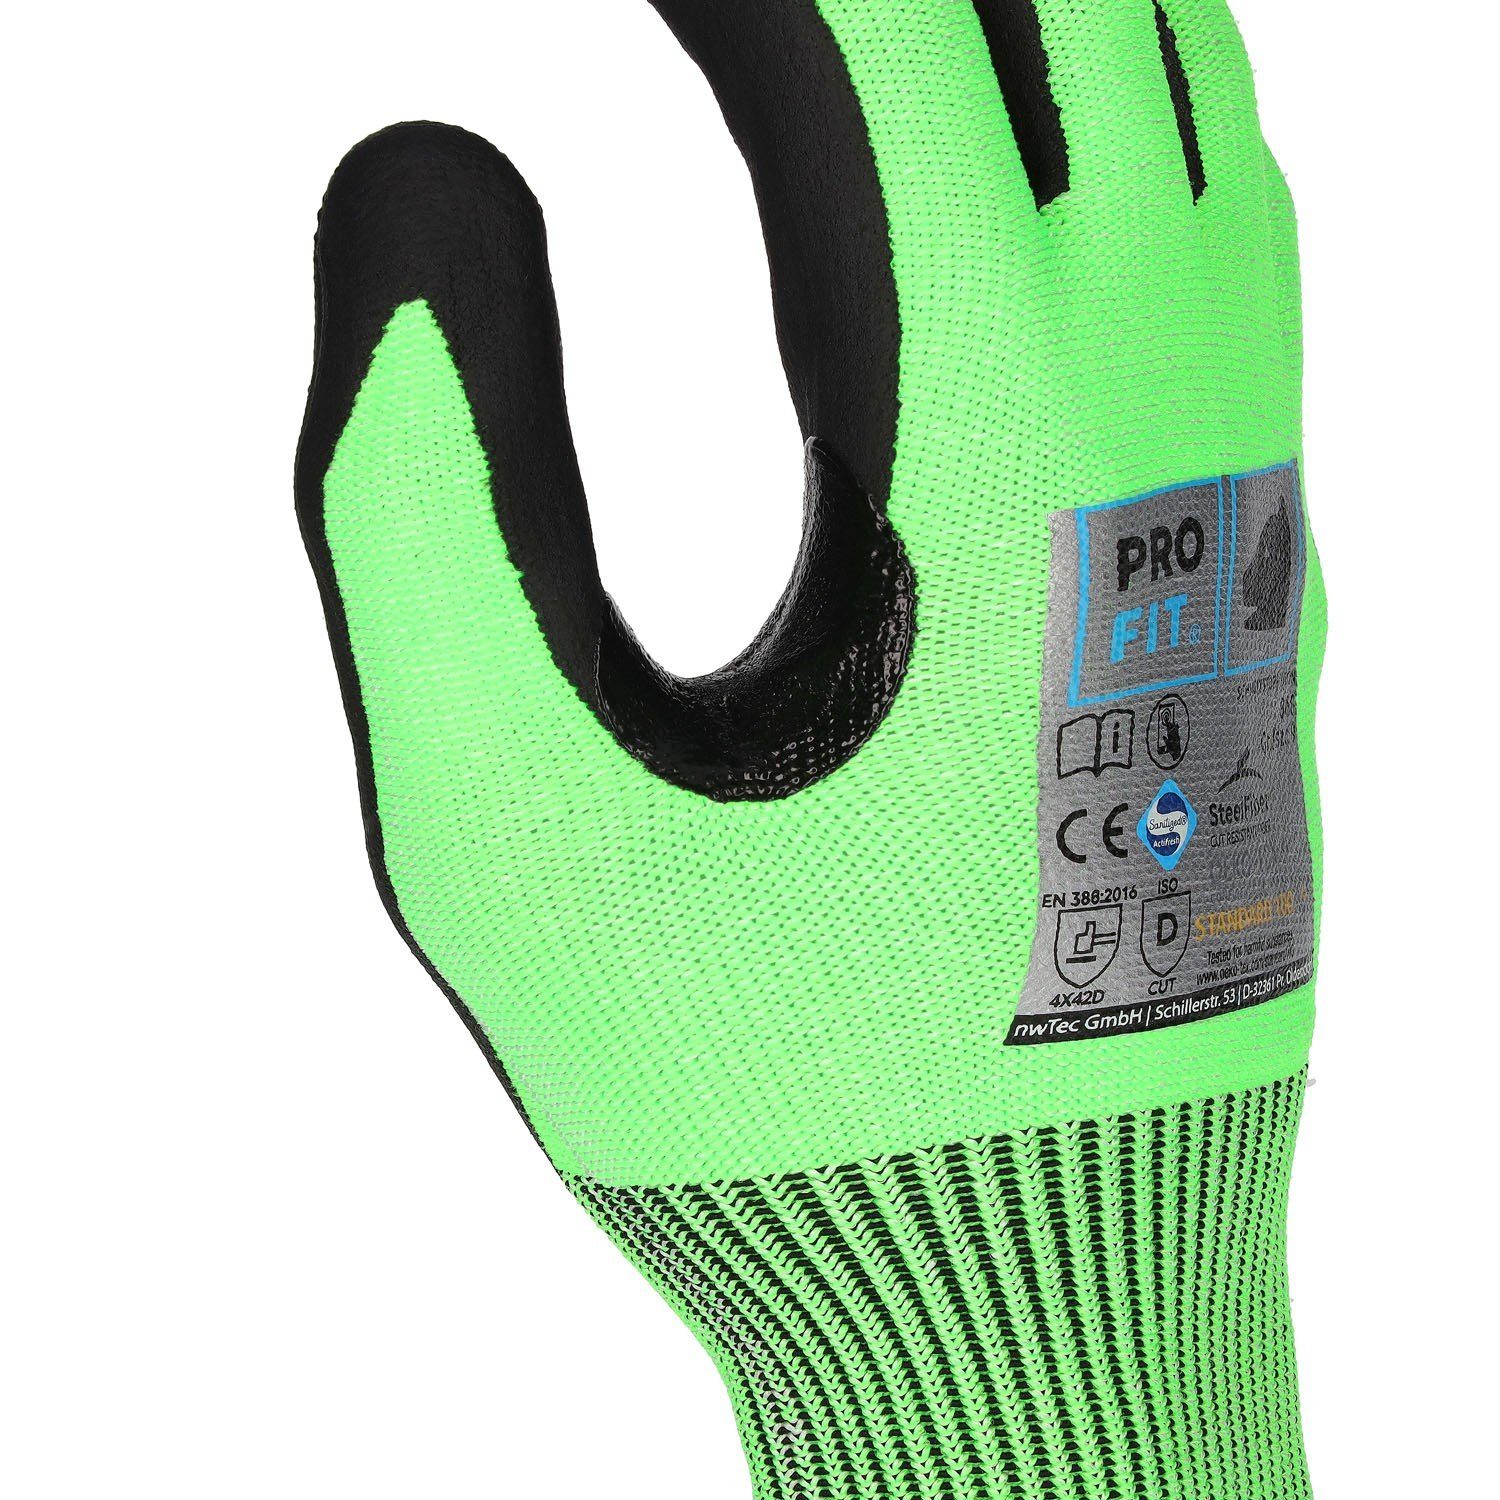 D, Fitzner (3, Nitril-Handschuhe FIT Level Daumenbeugenverstärkung NEON Paar) by Nitril-Schnittschutzhandschuh, PRO